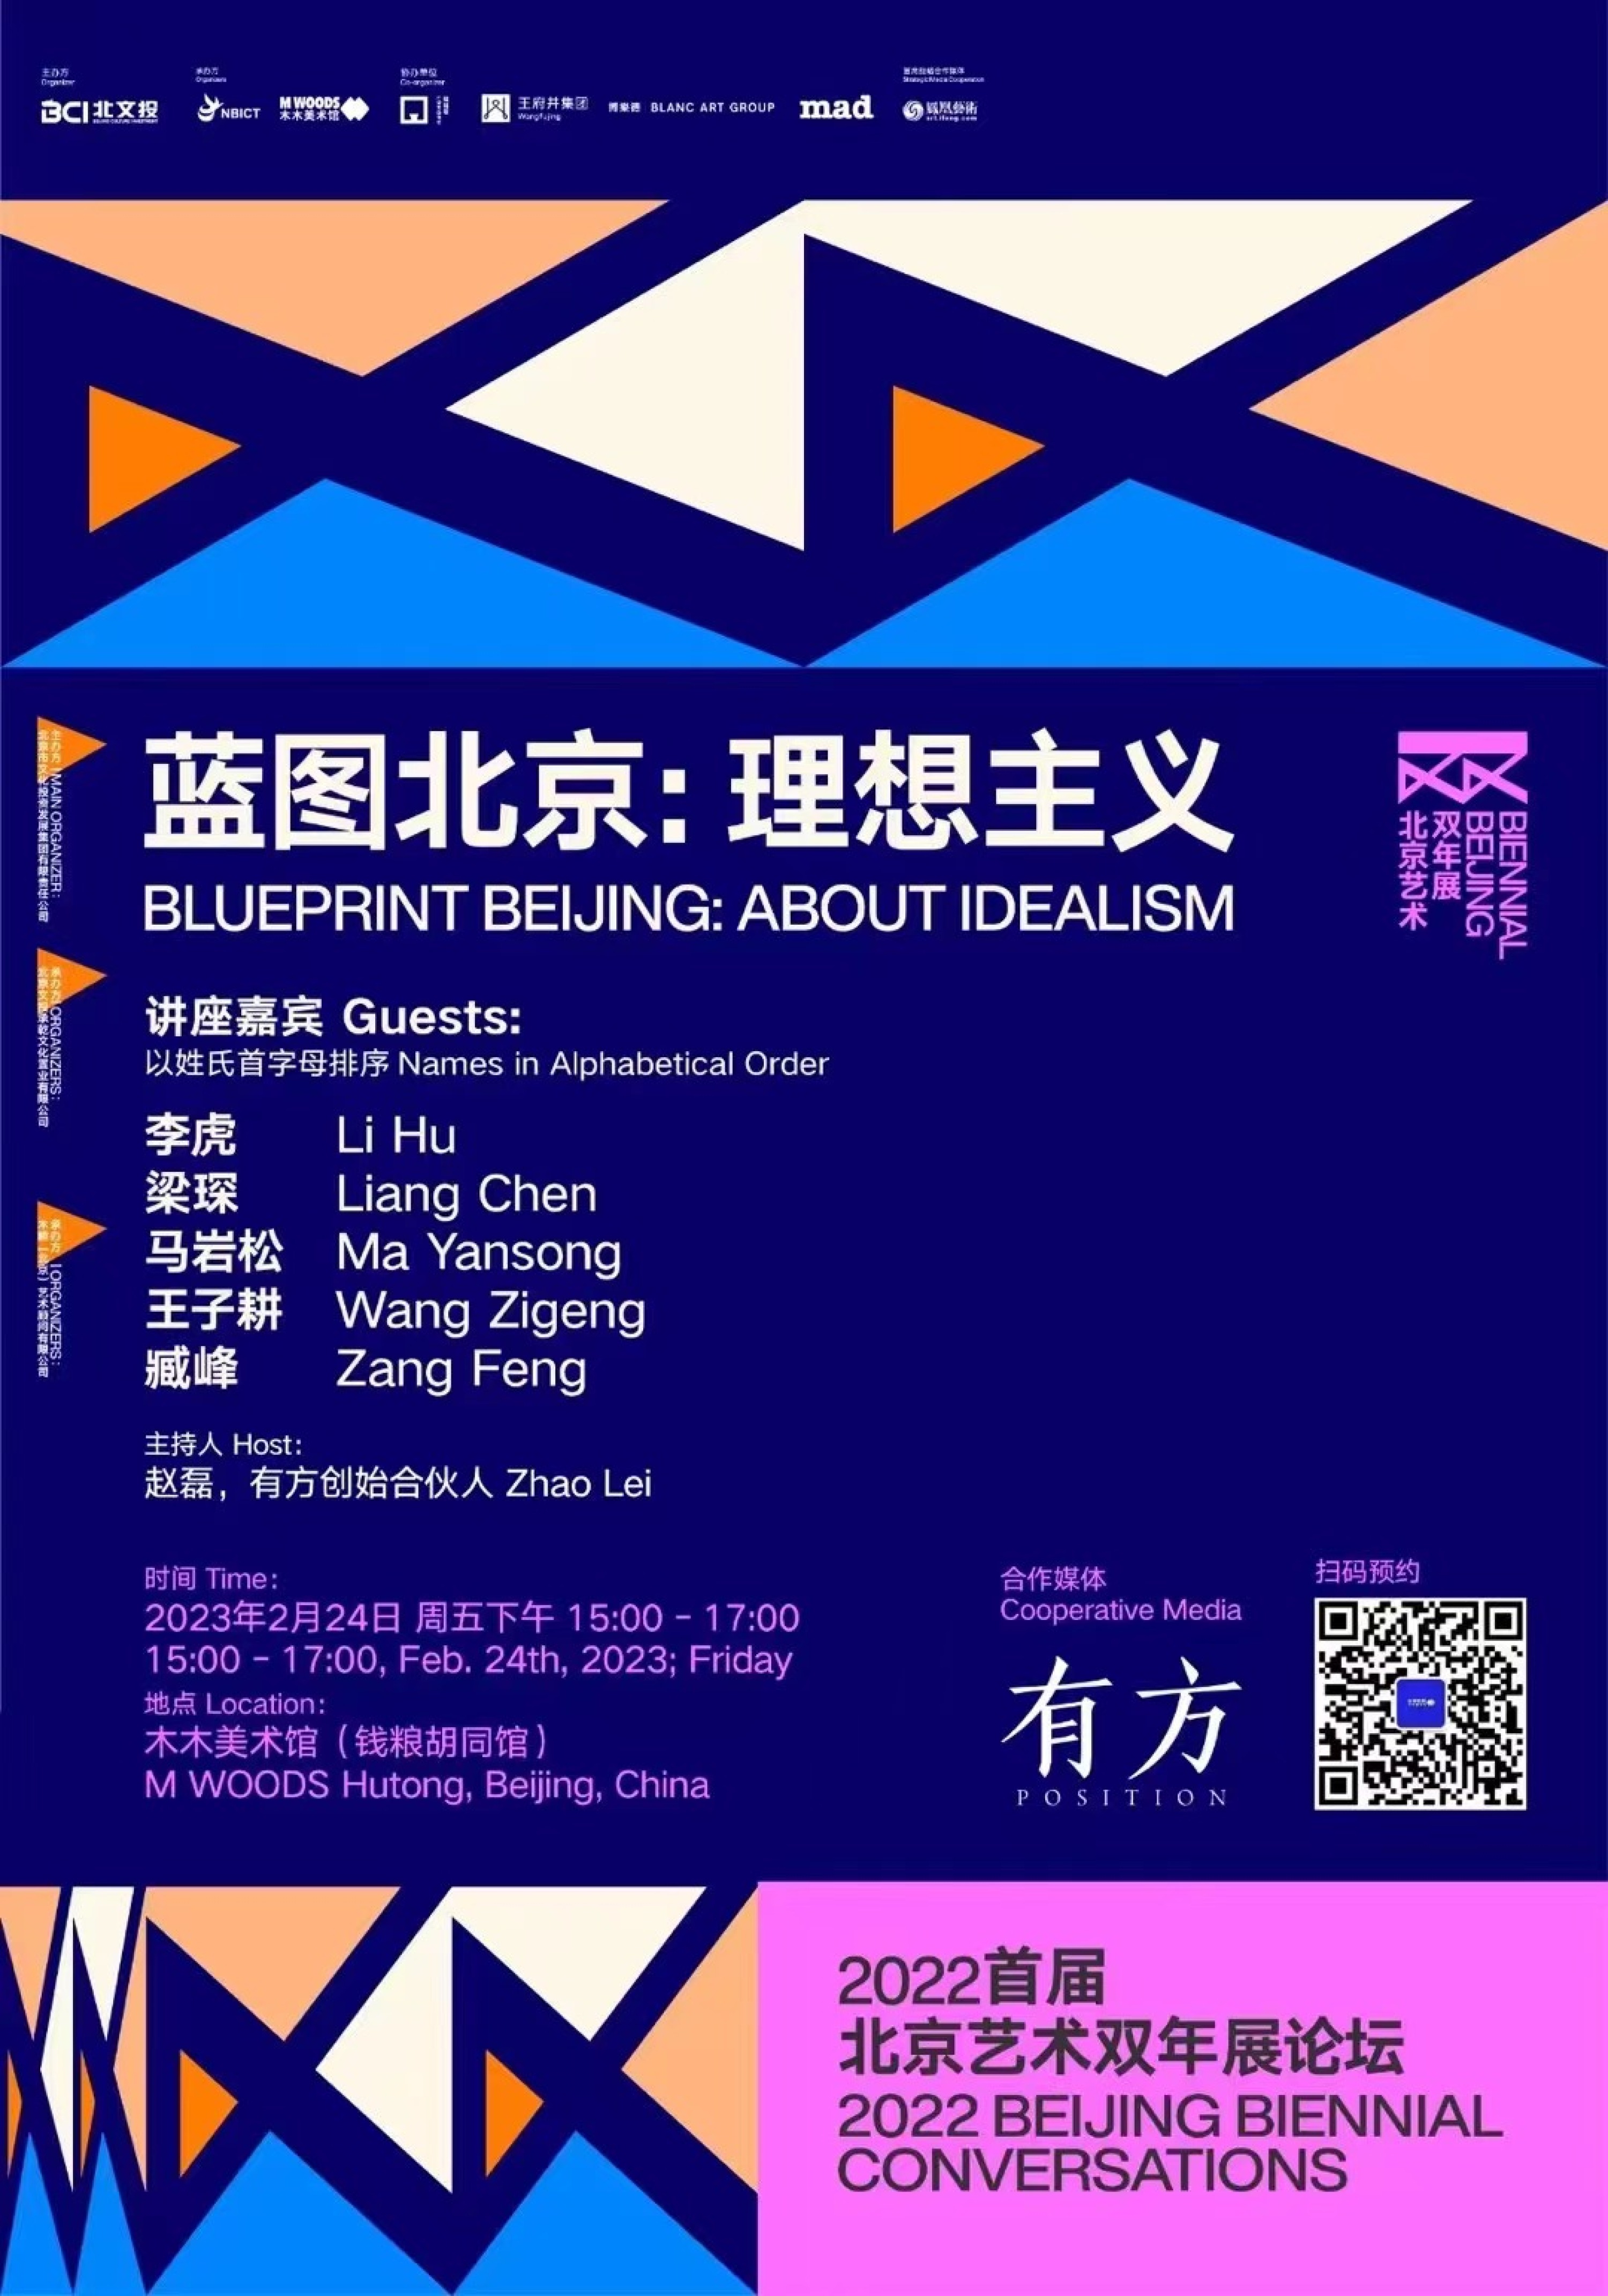 王子耕は初回北京アートビエンナーレ2022フォーラム「ブループリント・北京：理想主義」に招かれ出席